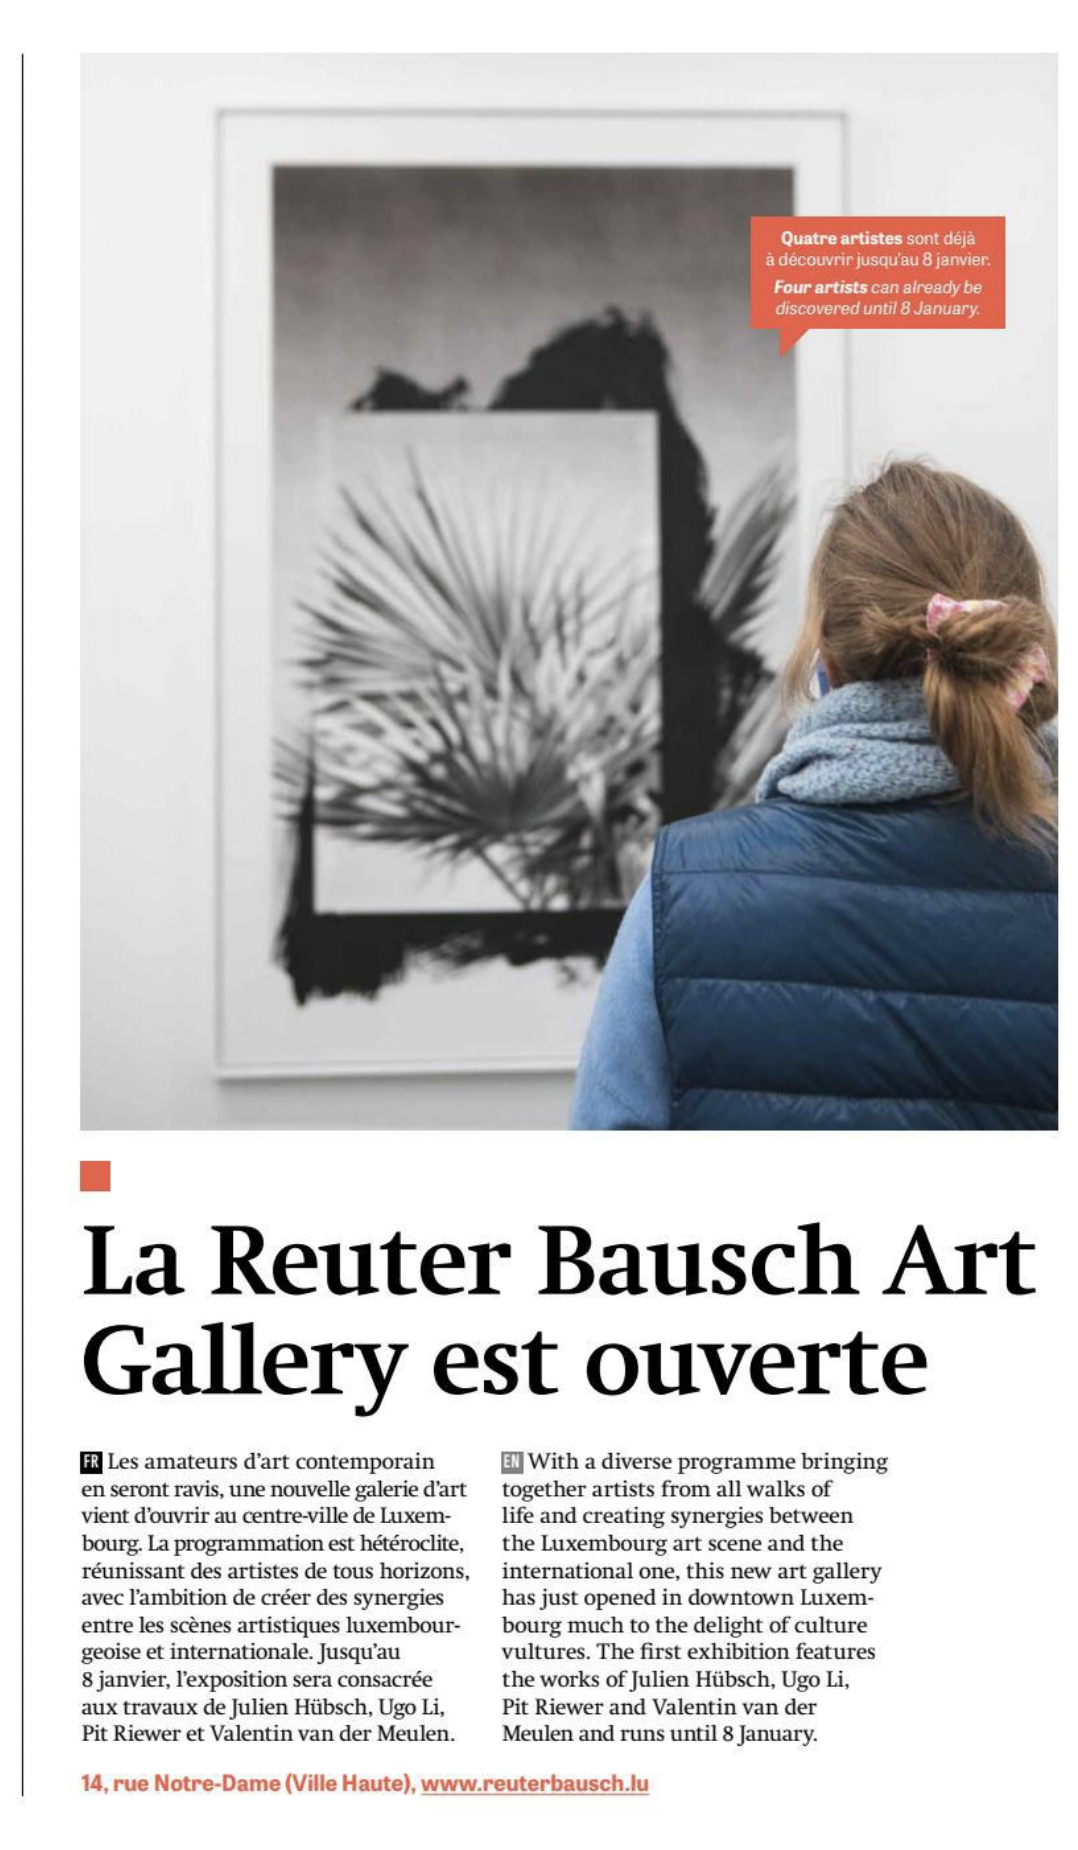 News of Reuter Bausch Art Gallery La Reuter Bausch Art Gallery est ouverte